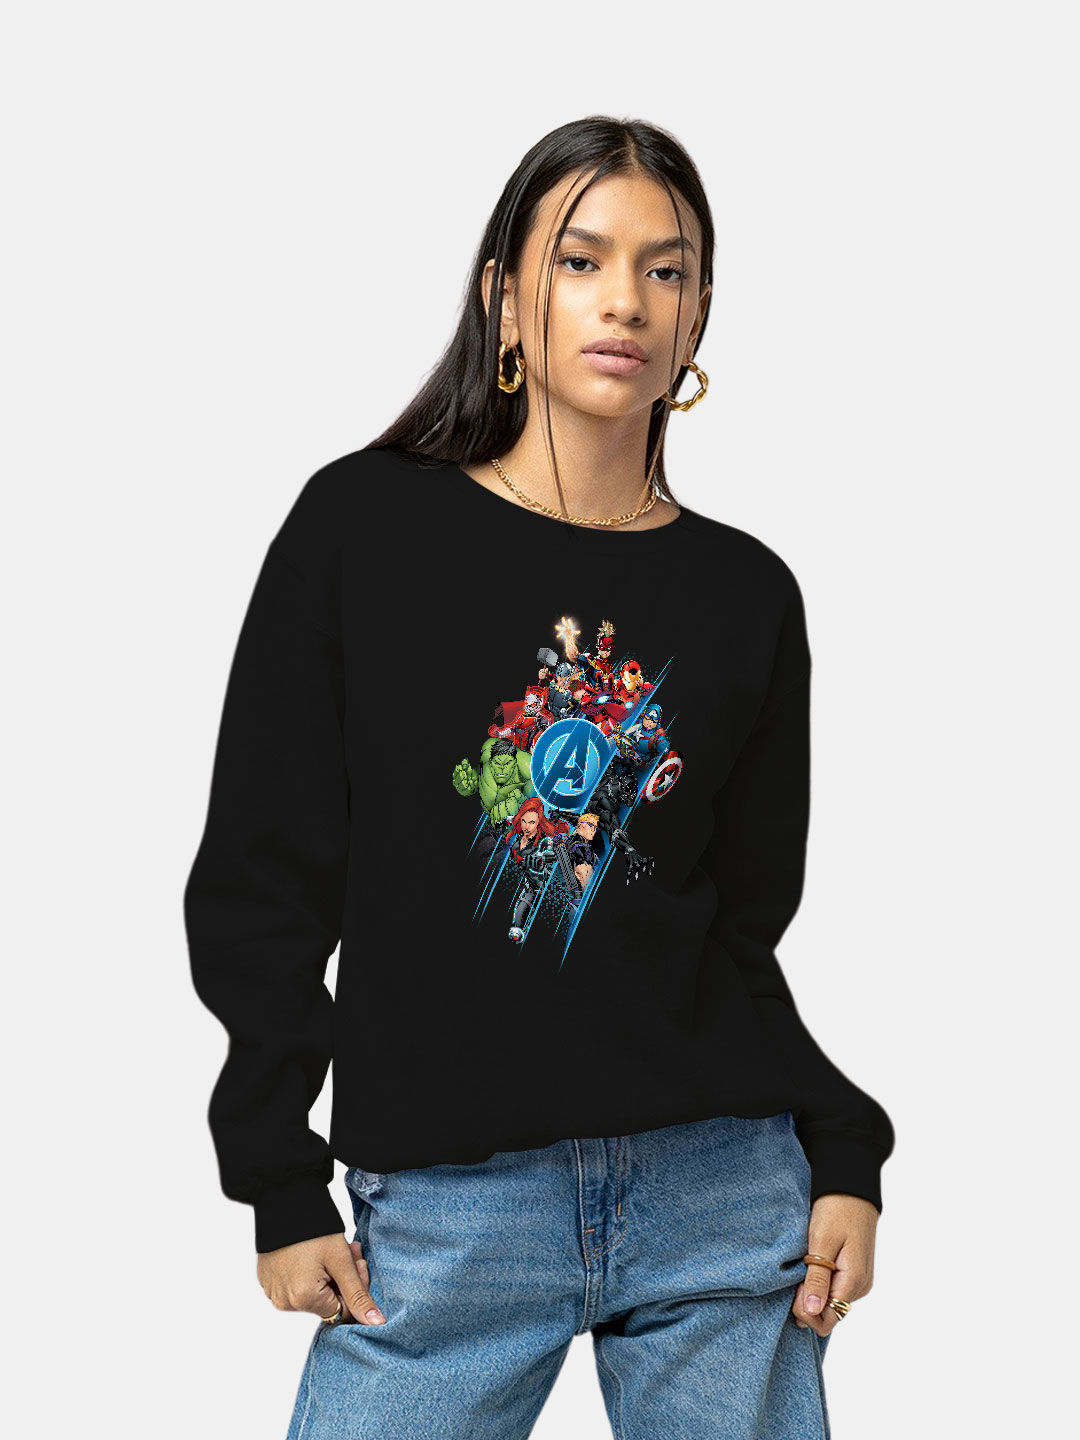 Buy All Heroes - Female Designer Sweatshirt Sweatshirts Online